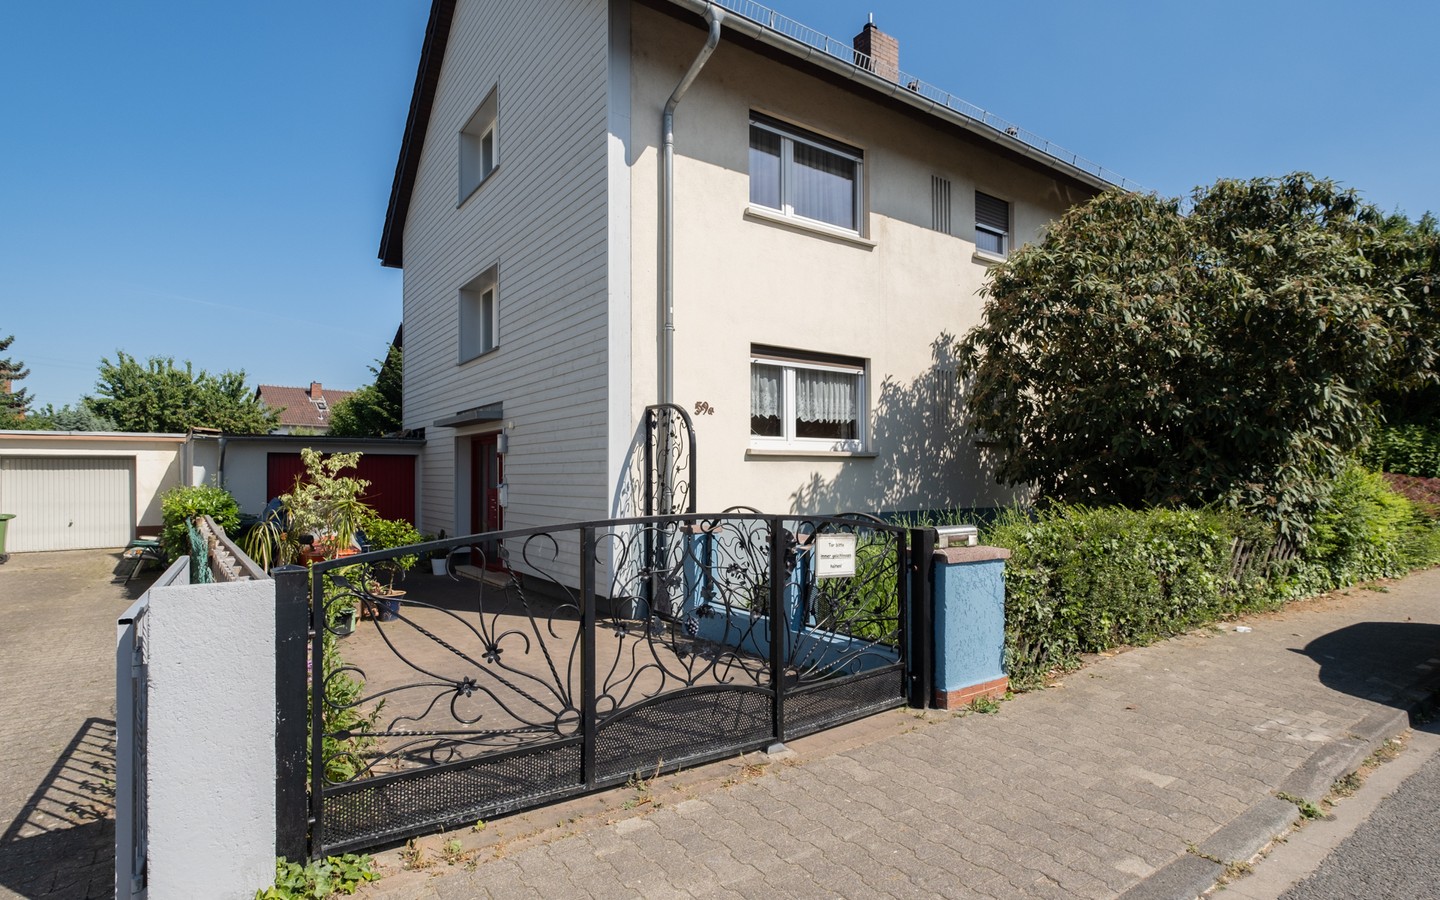 Hauszugang - Freistehendes 2-Familienhaus mit großem Gartengrundstück und viel Platz in Eppelheim (Erbpacht)